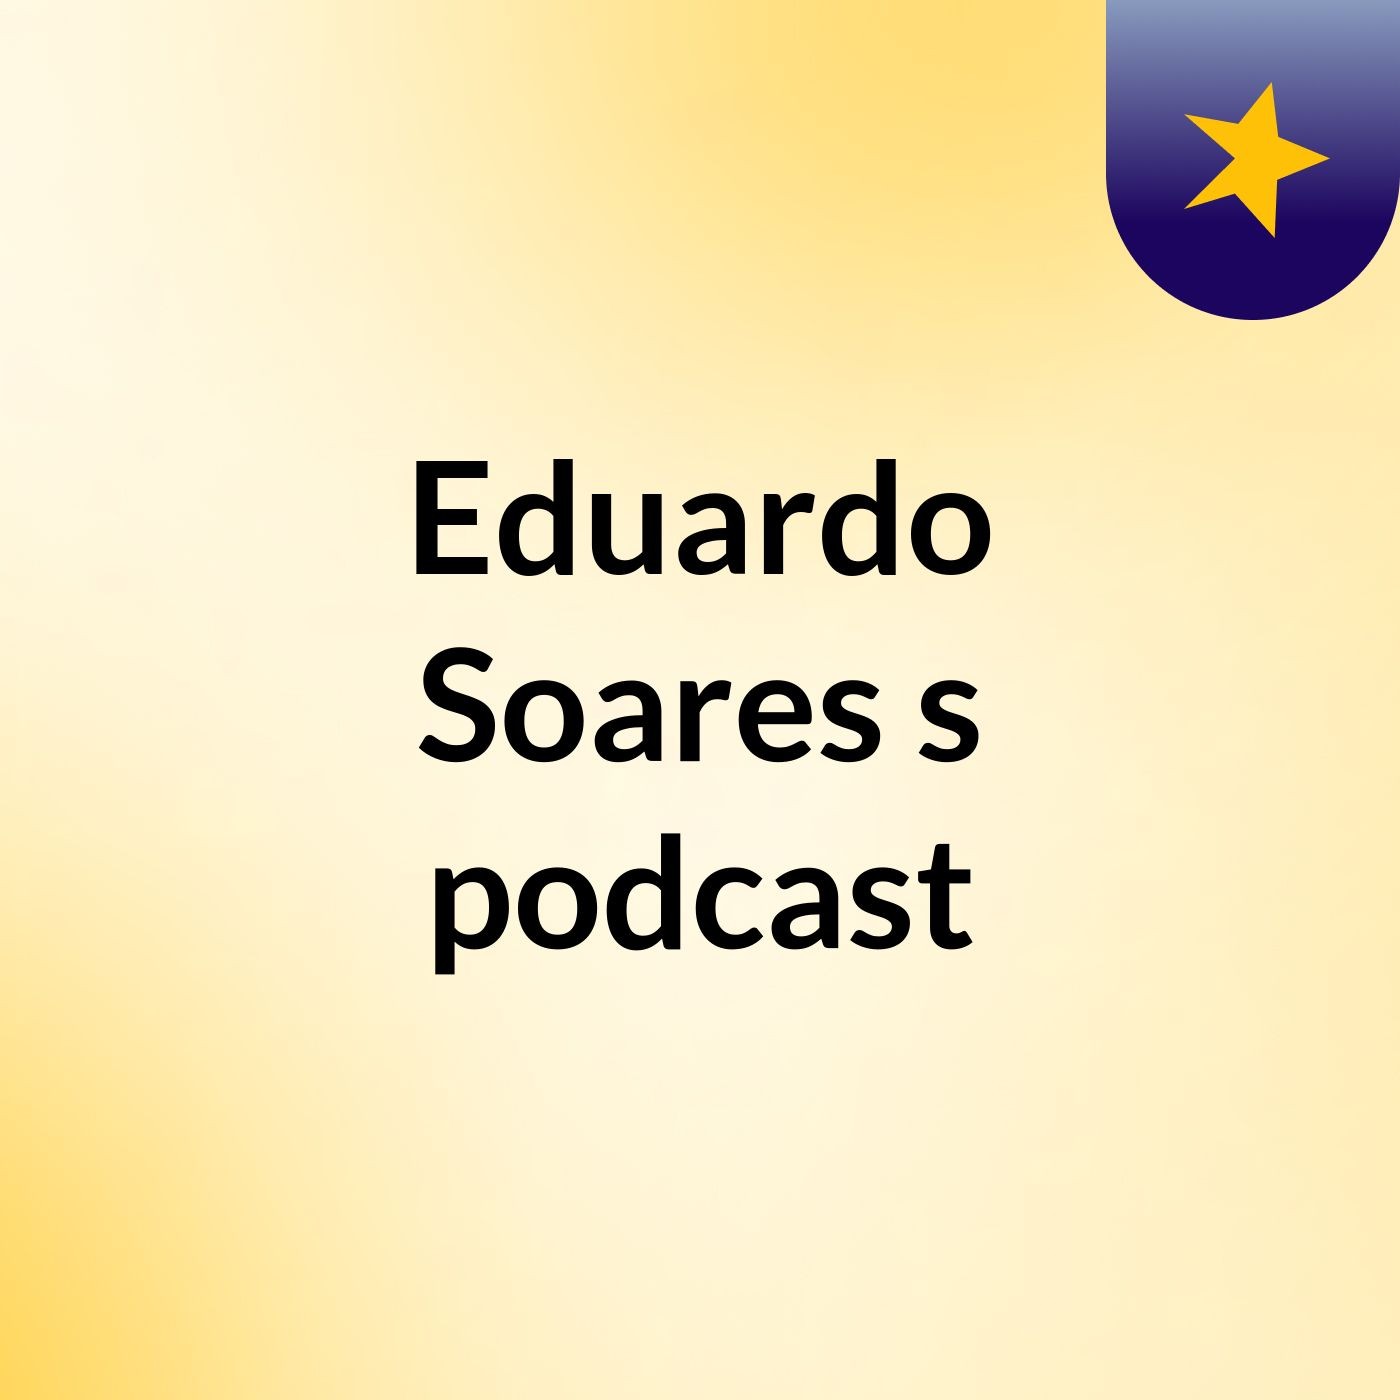 Eduardo Soares's podcast